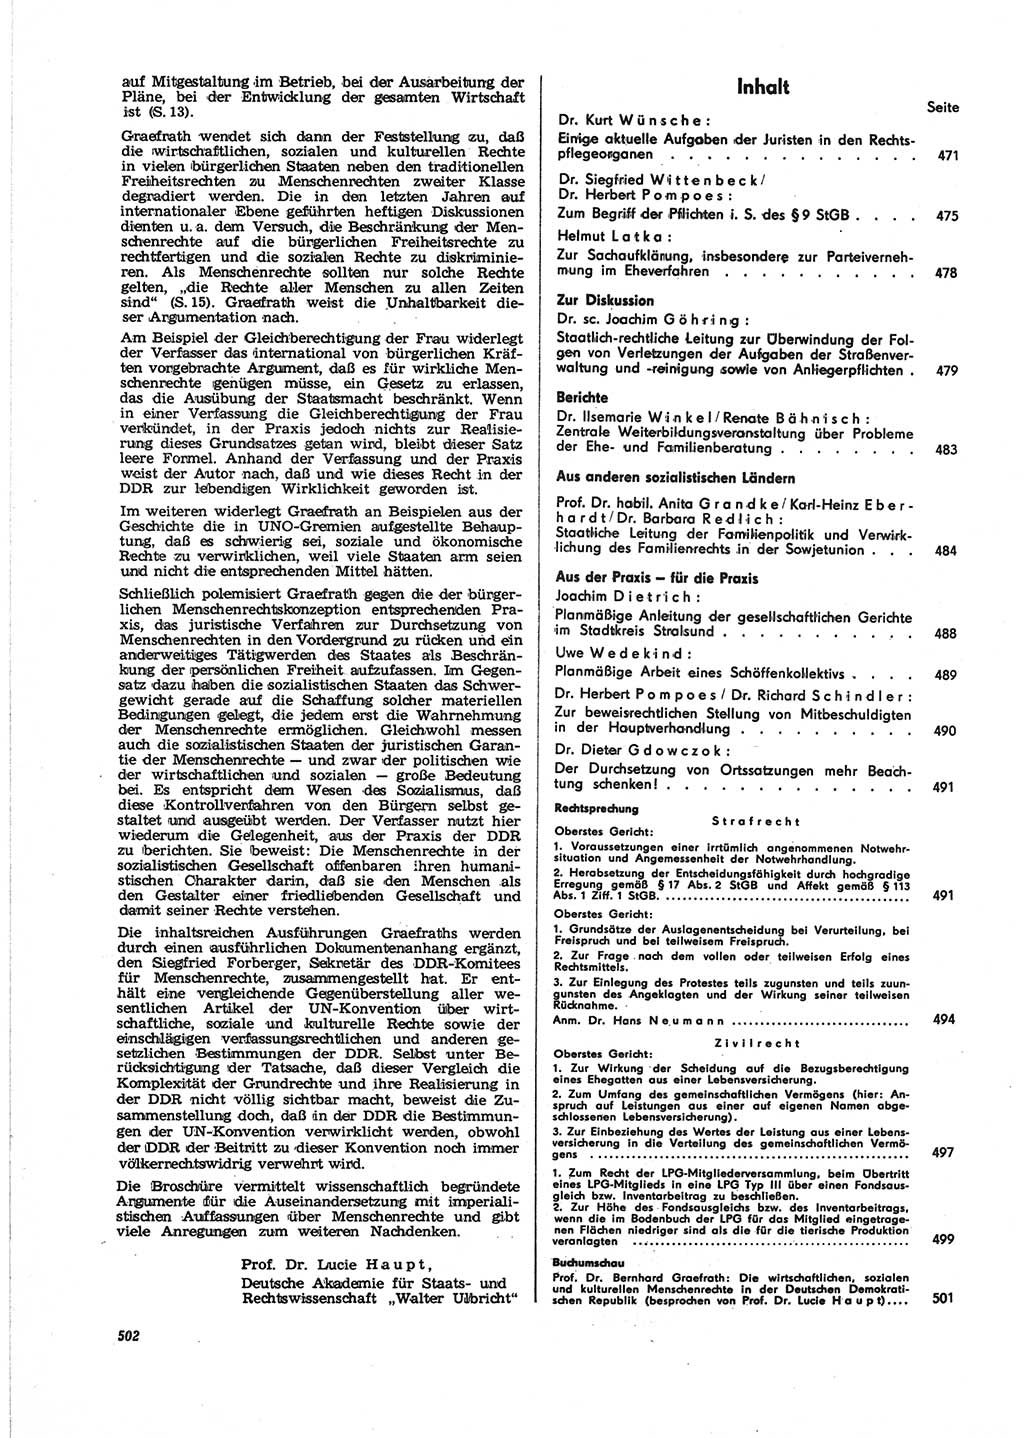 Neue Justiz (NJ), Zeitschrift für Recht und Rechtswissenschaft [Deutsche Demokratische Republik (DDR)], 25. Jahrgang 1971, Seite 502 (NJ DDR 1971, S. 502)